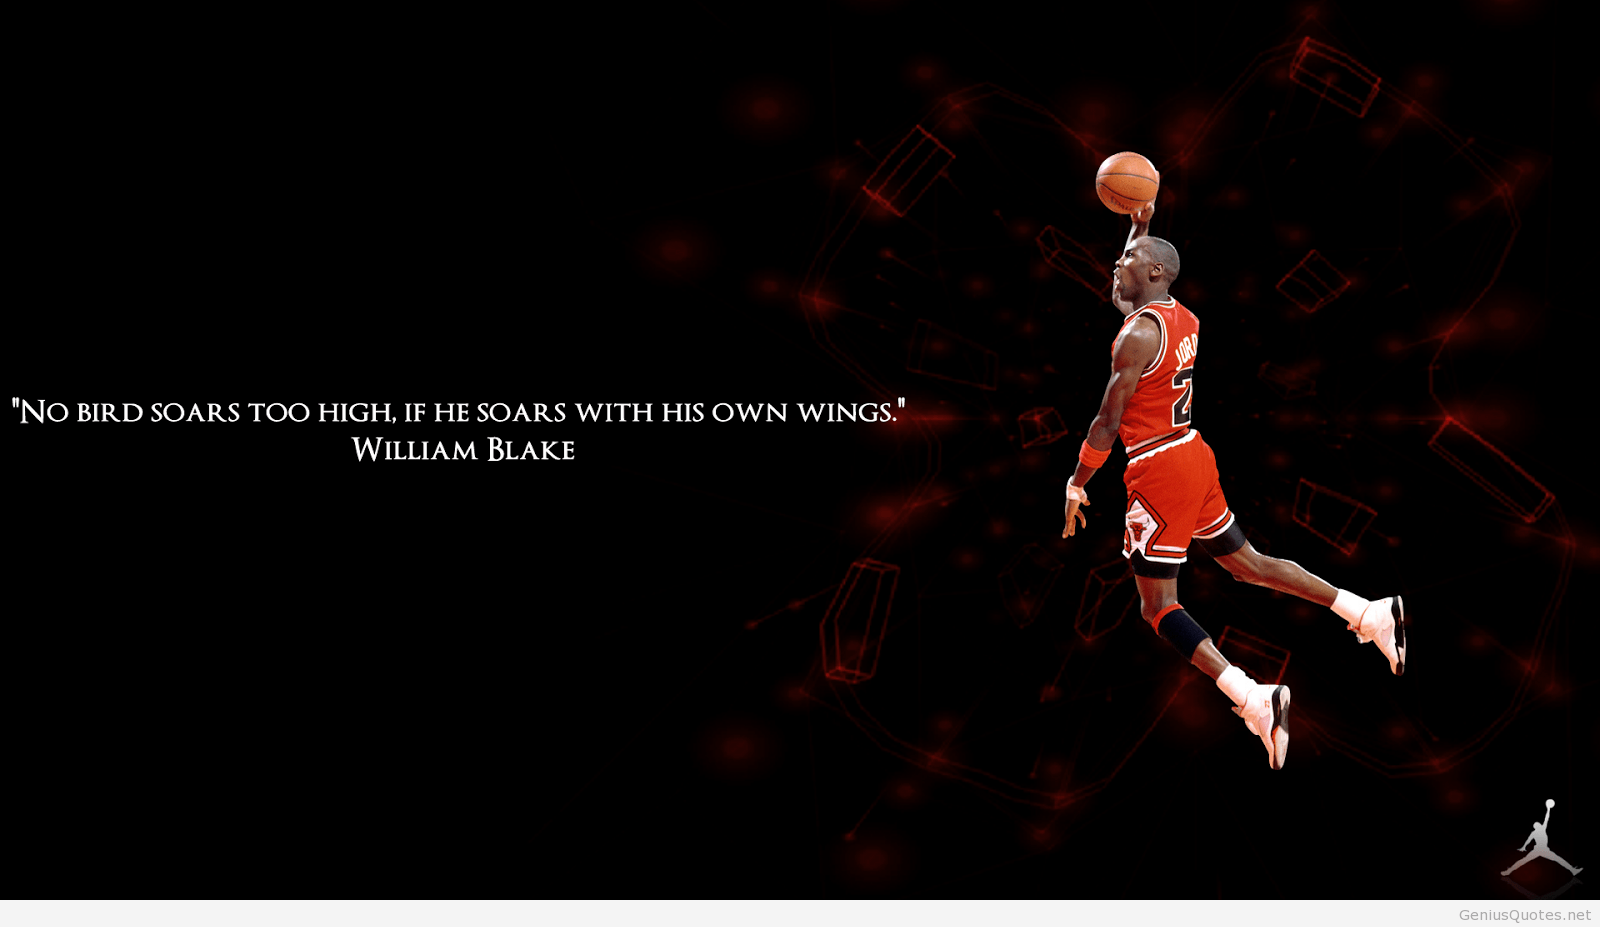 Michael Jordan Quote Wallpaper